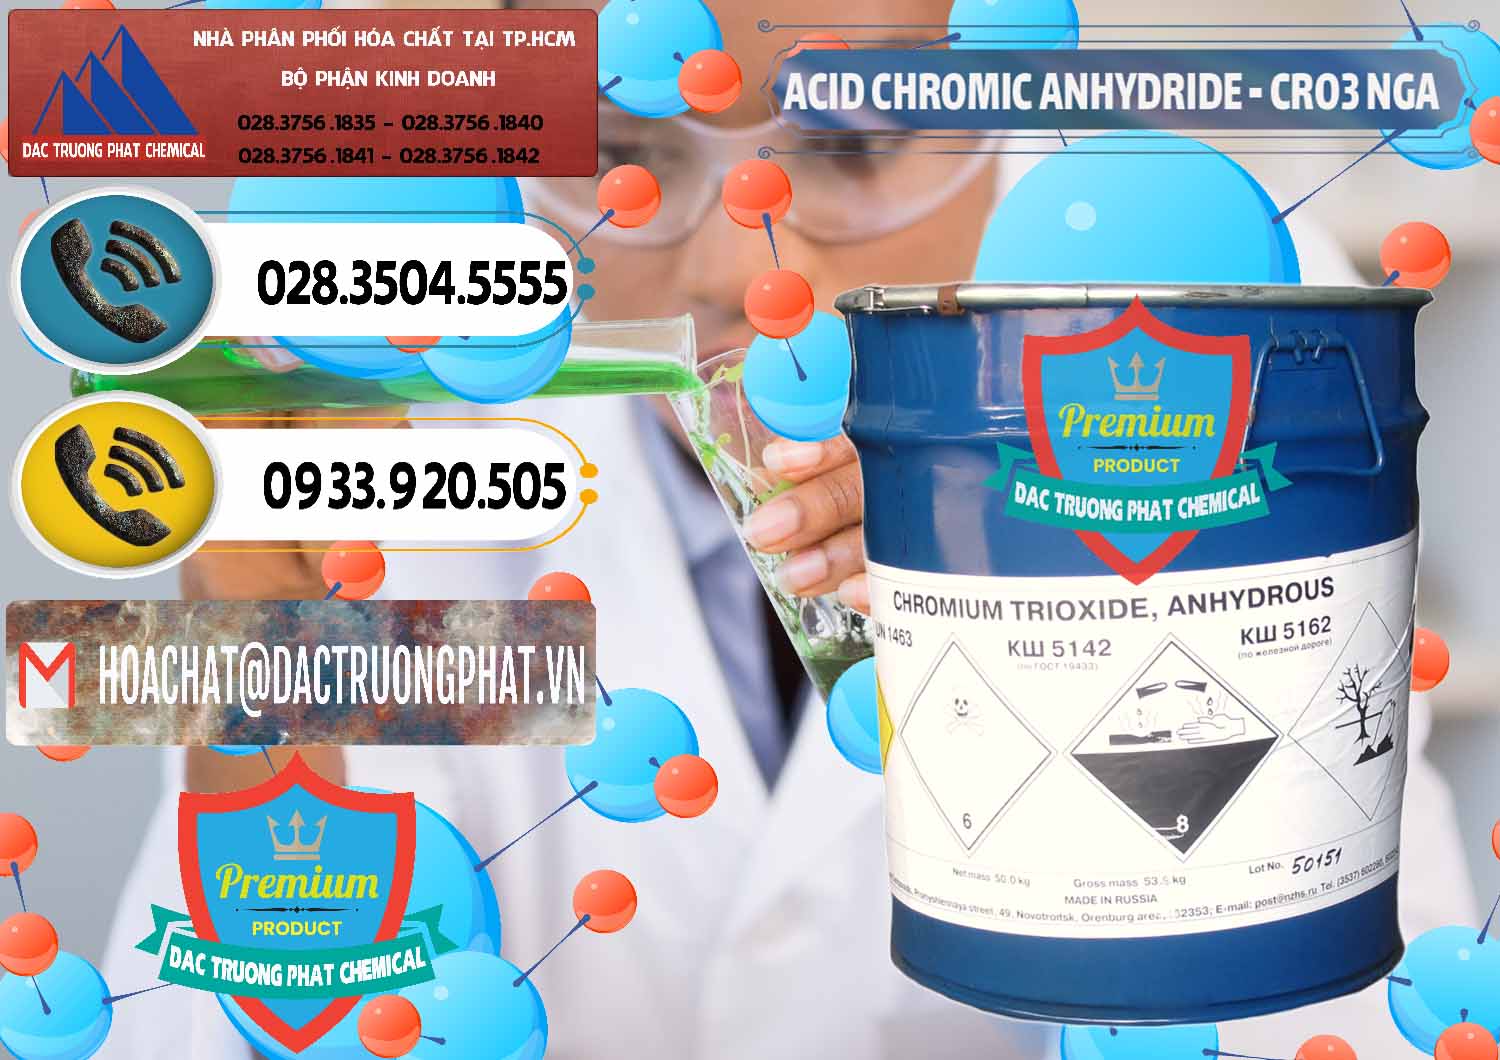 Nơi nhập khẩu _ bán Acid Chromic Anhydride - Cromic CRO3 Nga Russia - 0006 - Nhà phân phối ( cung cấp ) hóa chất tại TP.HCM - hoachatdetnhuom.vn